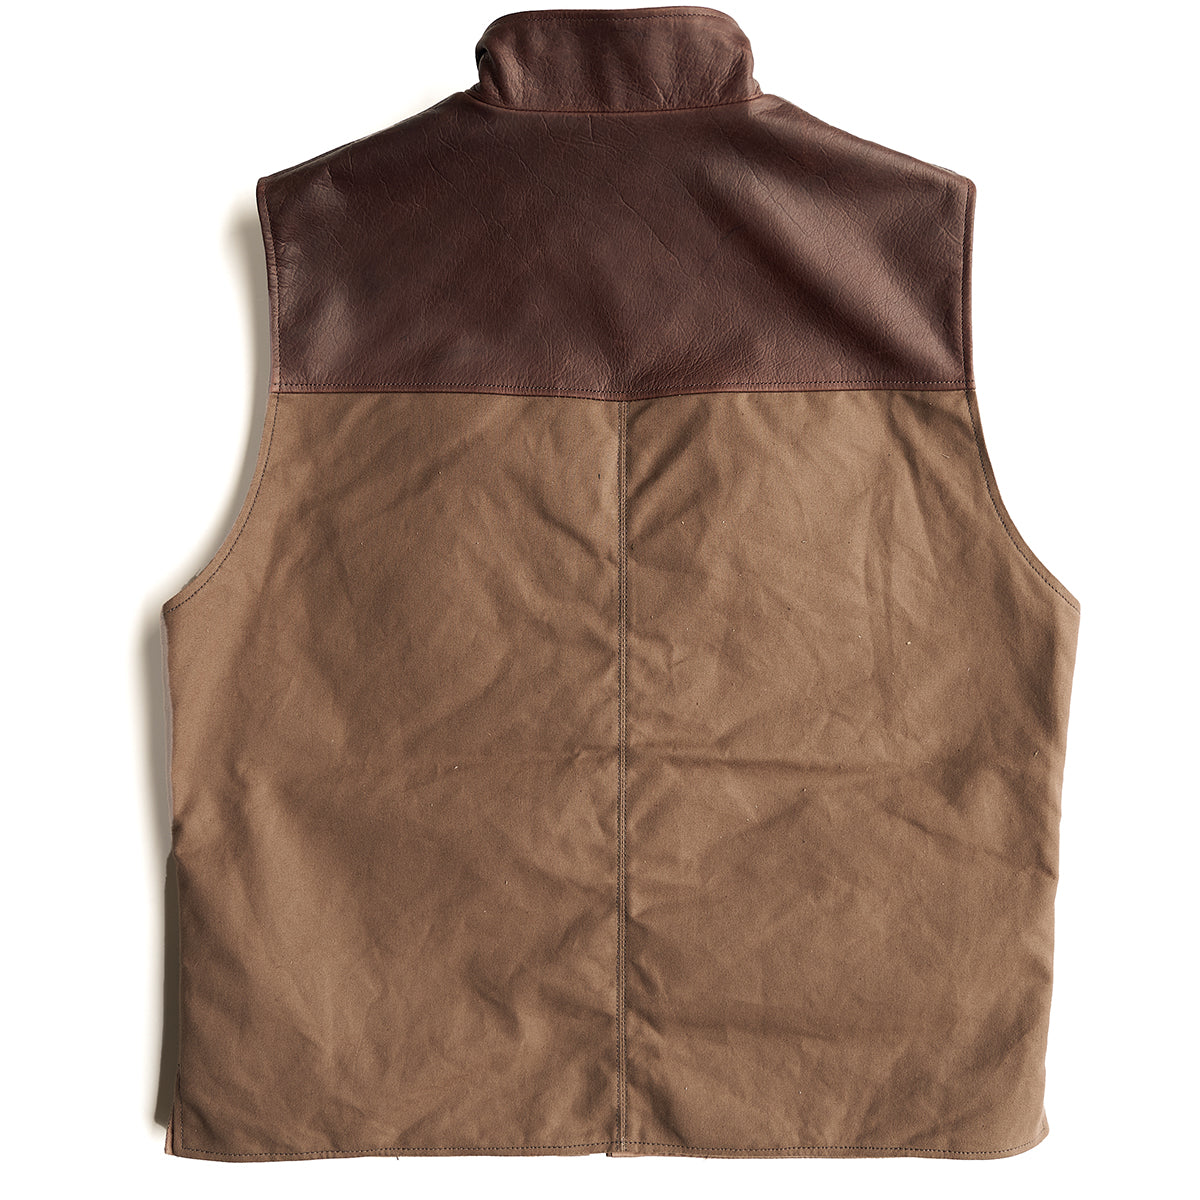 Kodiak Canvas & Bison Vest (L.E.)